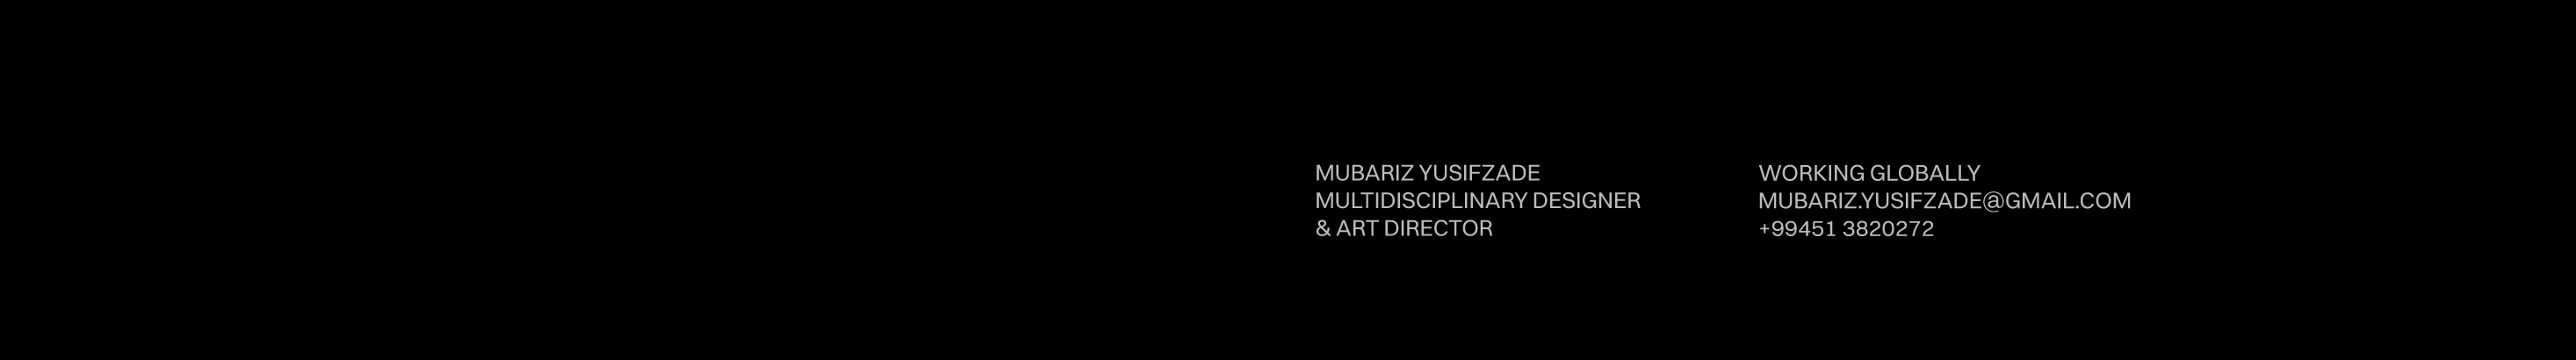 Mubariz Yusifzade's profile banner